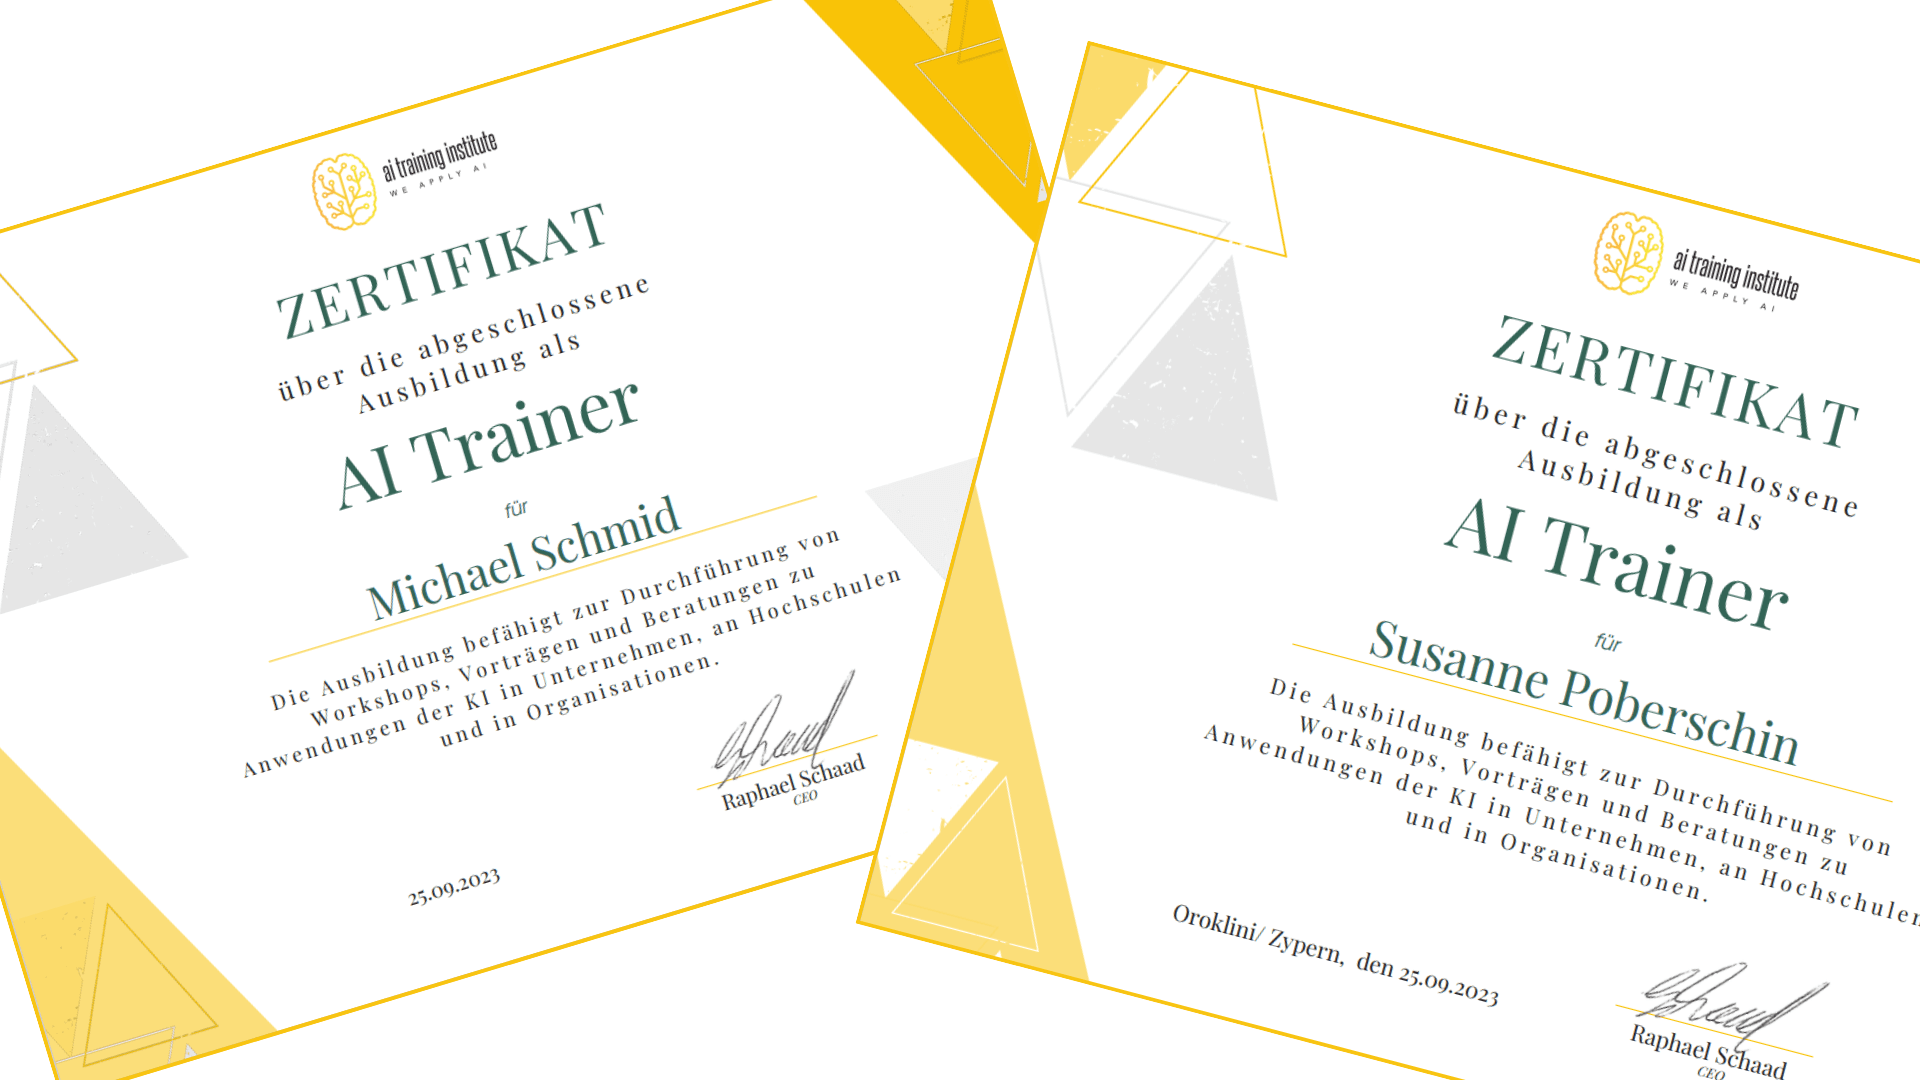 Zertifikate KI-Trainer / AI Trainer für Michael Schmid und Susanne Poberschin